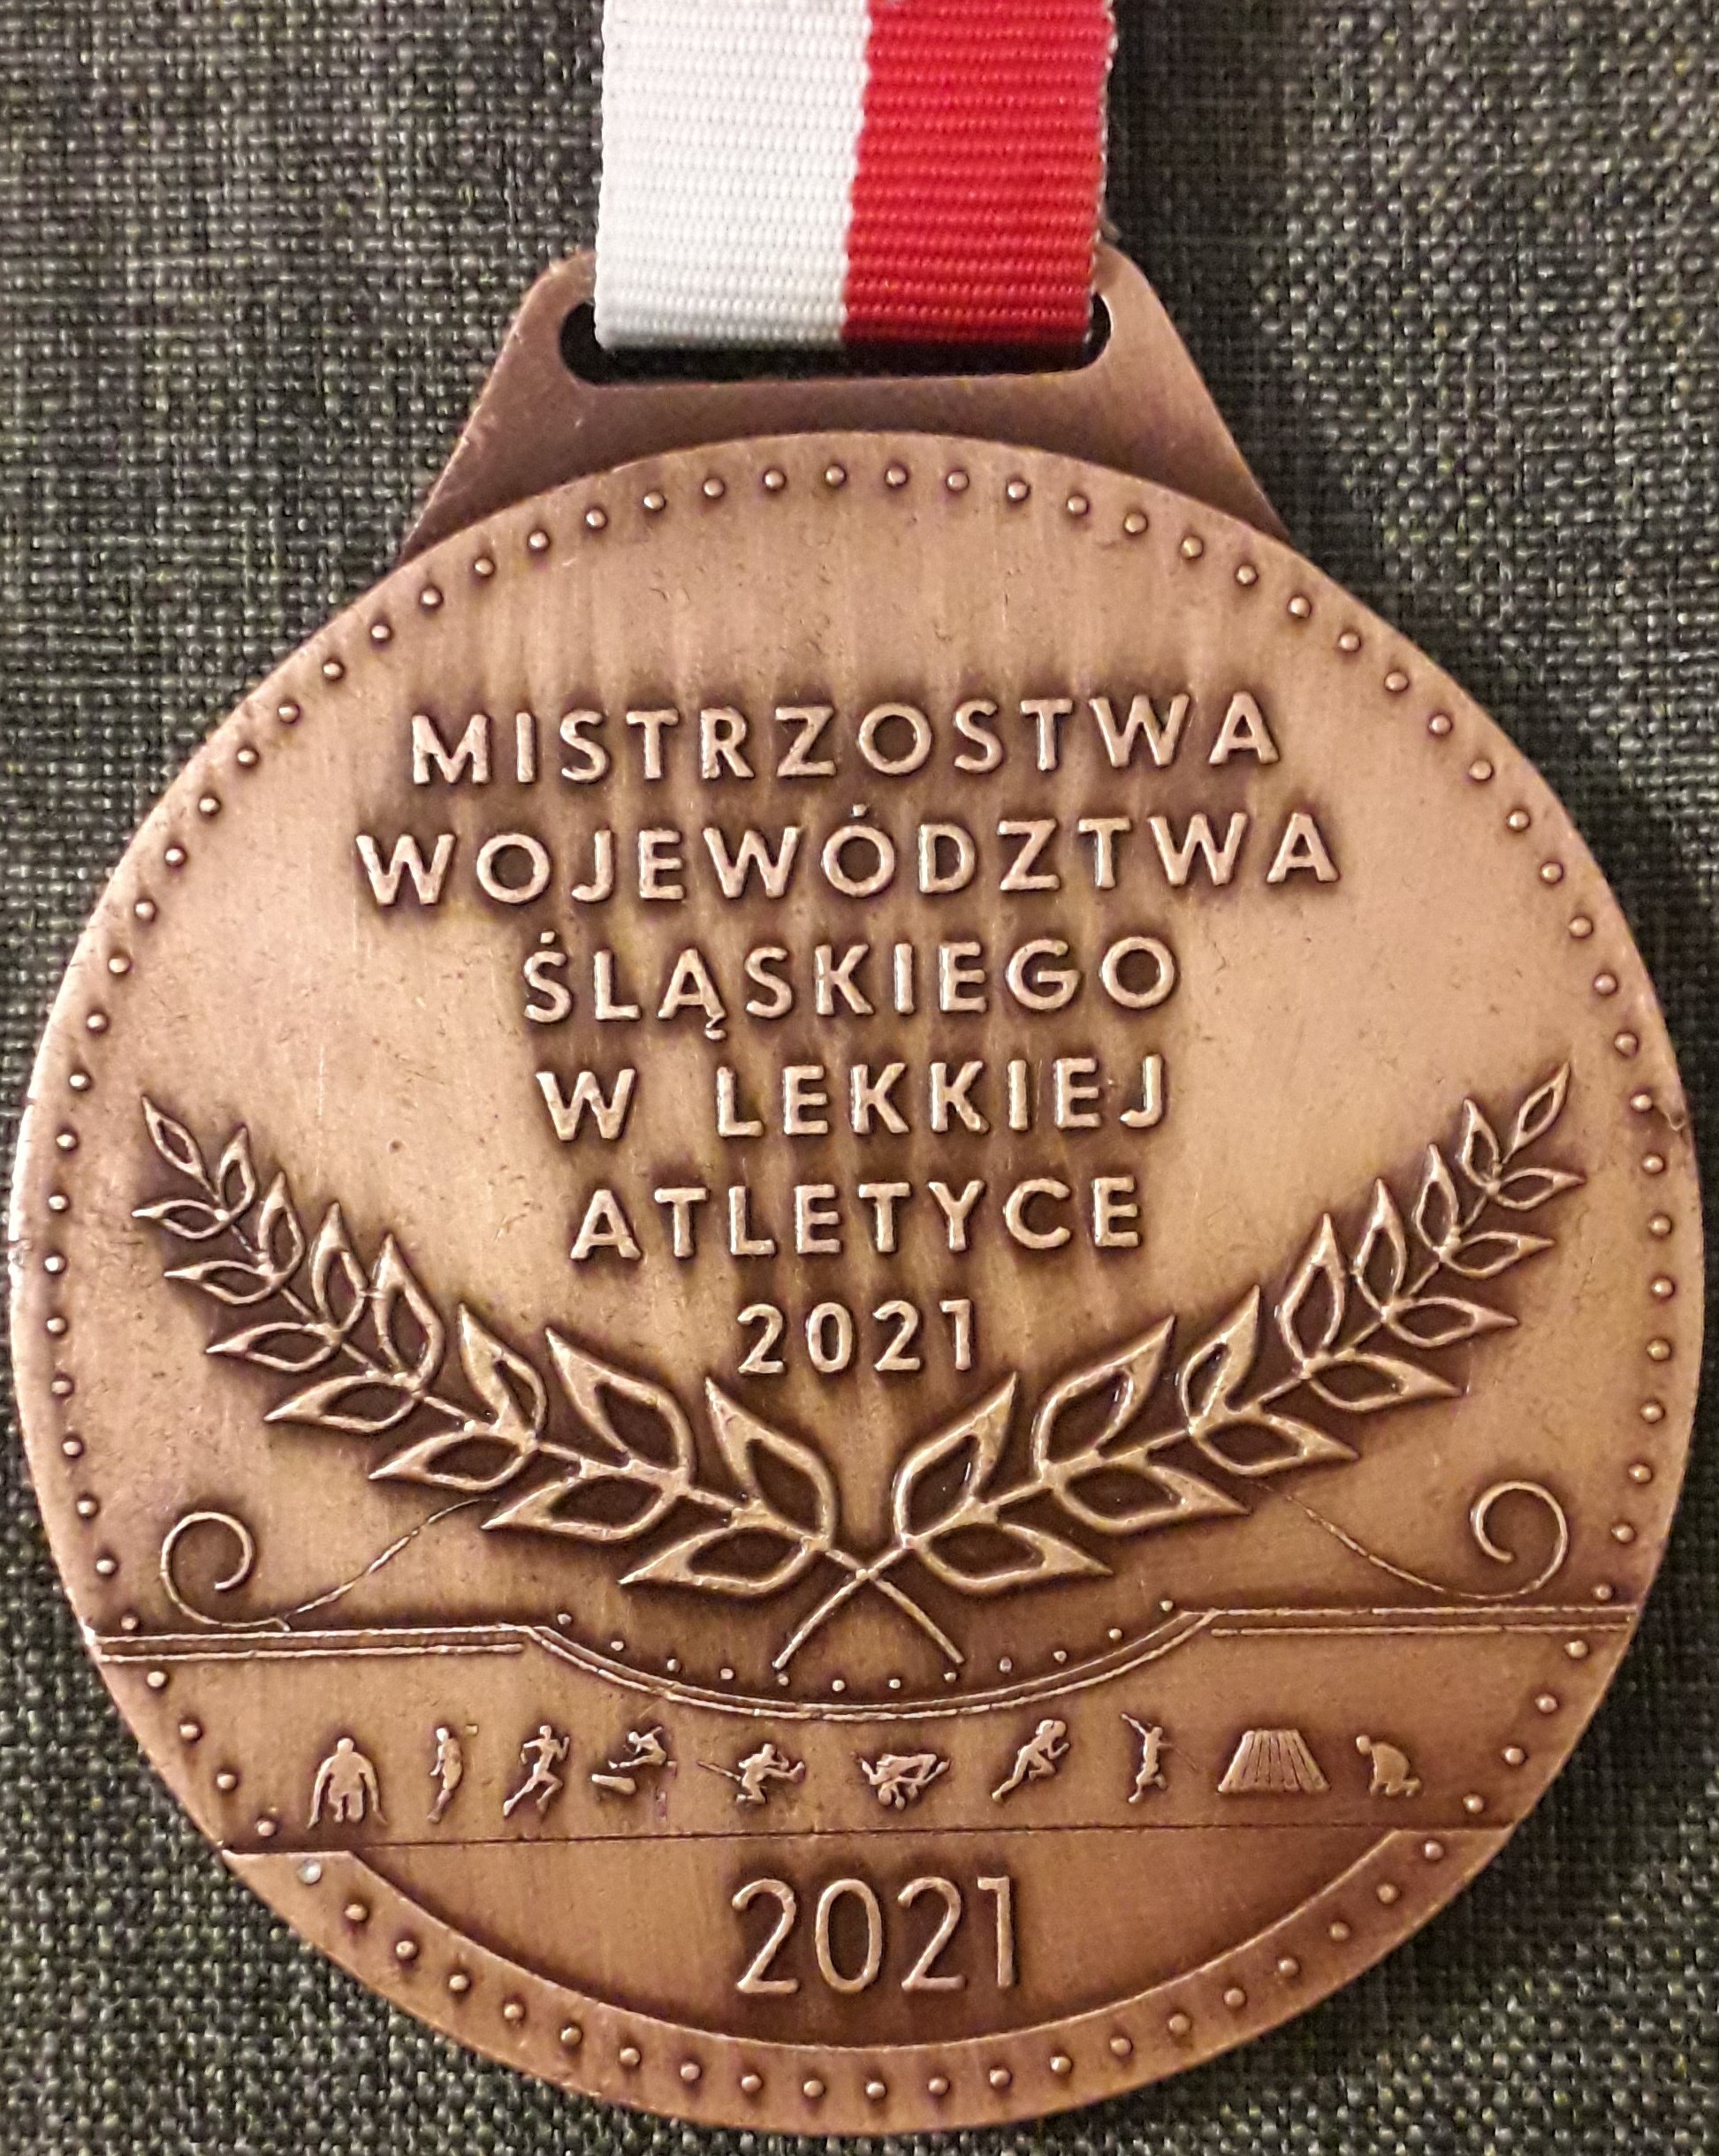 Brązowy medal z wygrawerowaną nazwą zawodów.